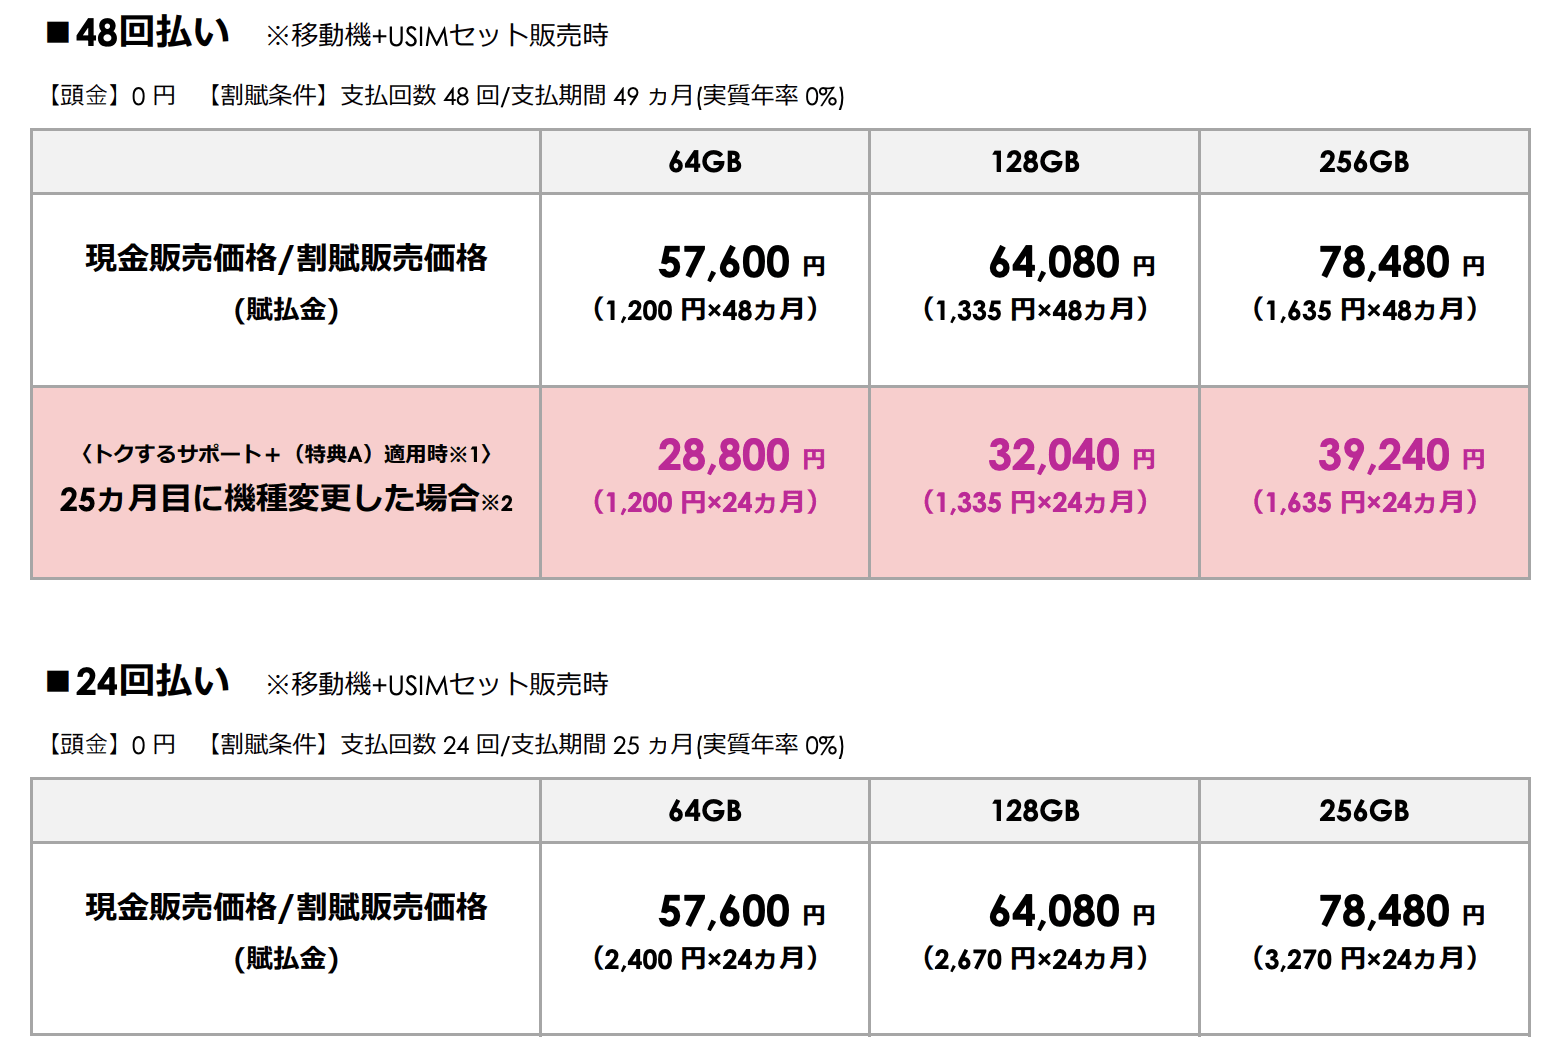 ソフトバンク 新型iphone Seの価格を公開 税込5万7600円から Engadget 日本版